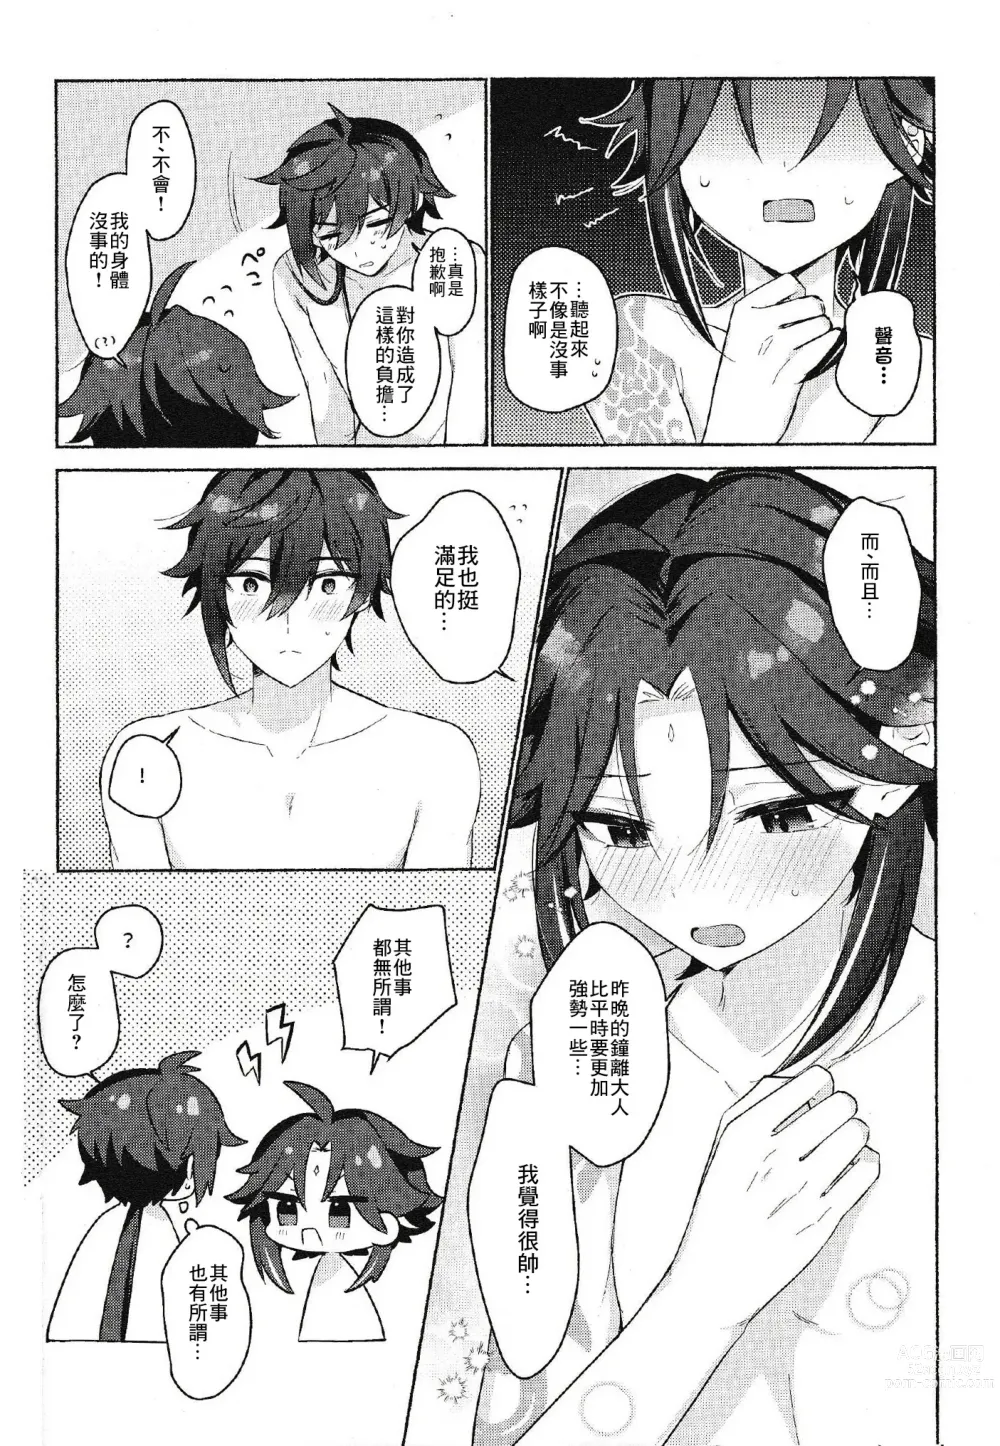 Page 39 of doujinshi Shokushu